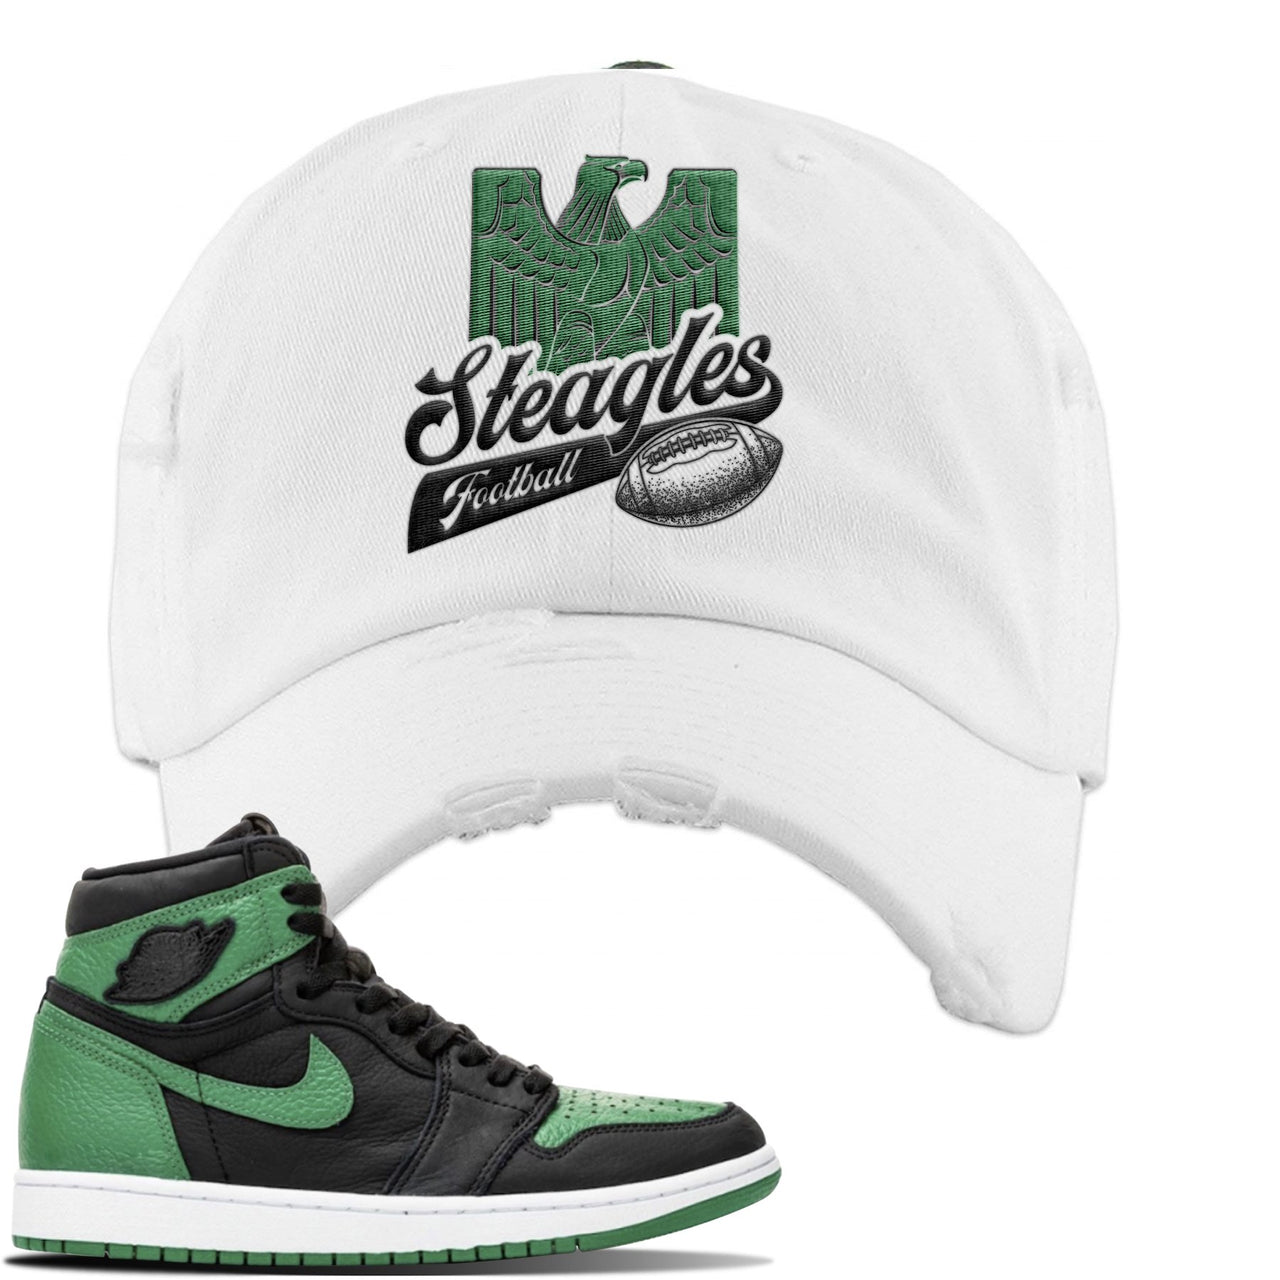 Jordan 1 Retro High OG Pine Green Gym Sneaker White Distressed Dad Hat | Hat to match Air Jordan 1 Retro High OG Pine Green Gym Shoes | Steagles